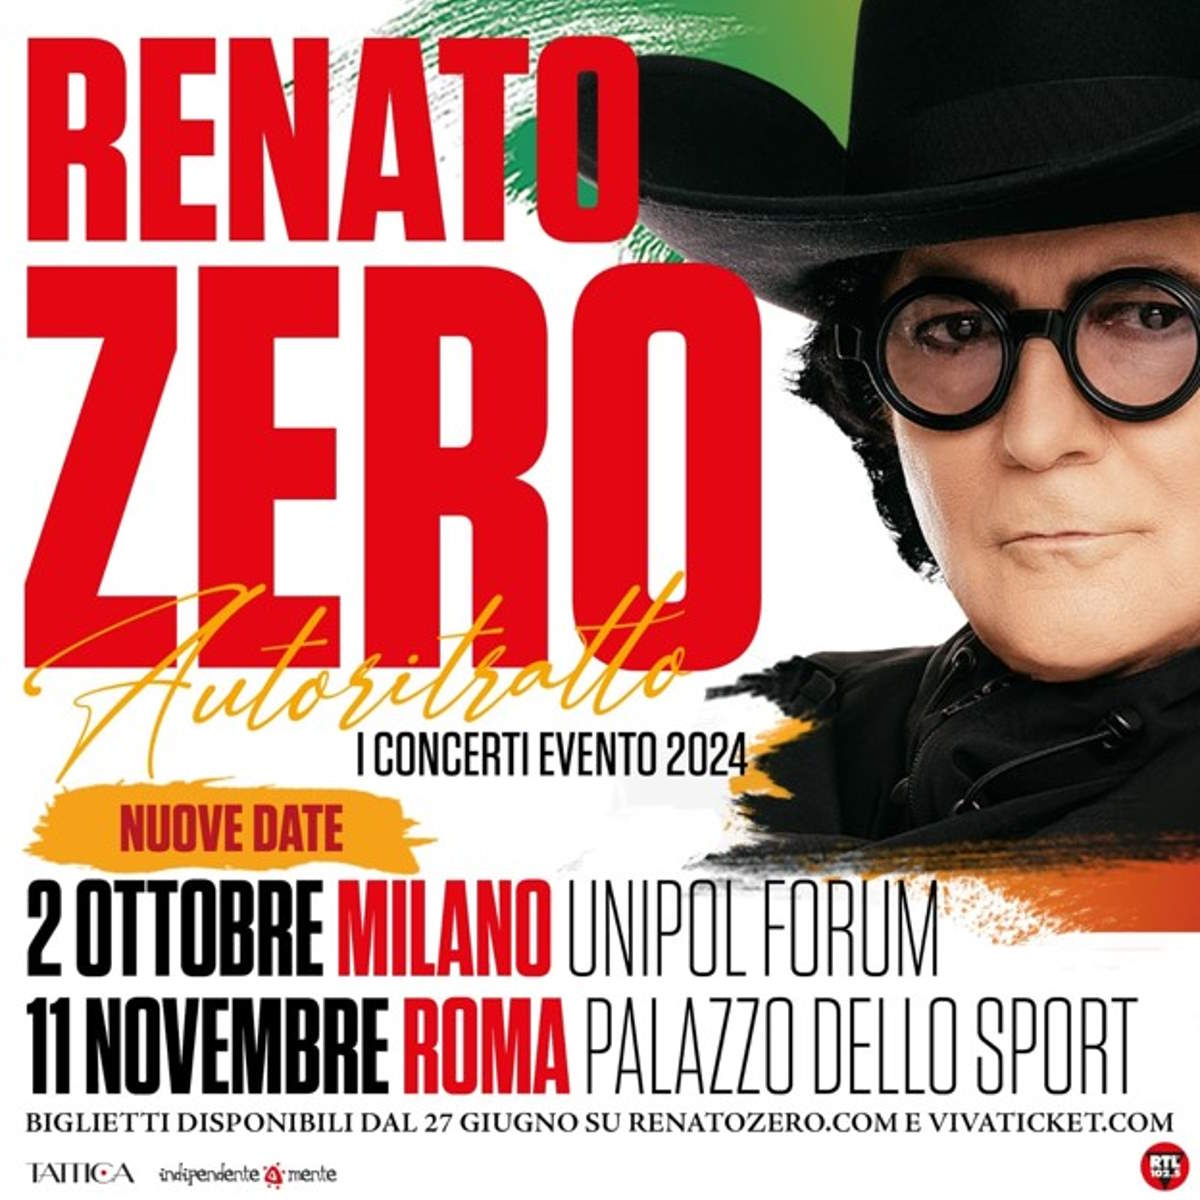 Renato Zero, Autoritratto - I Concerti Evento: terza data all’Unipol Forum, per il primo compleanno sul palco di Milano e raddoppio, a Roma, per il gran finale